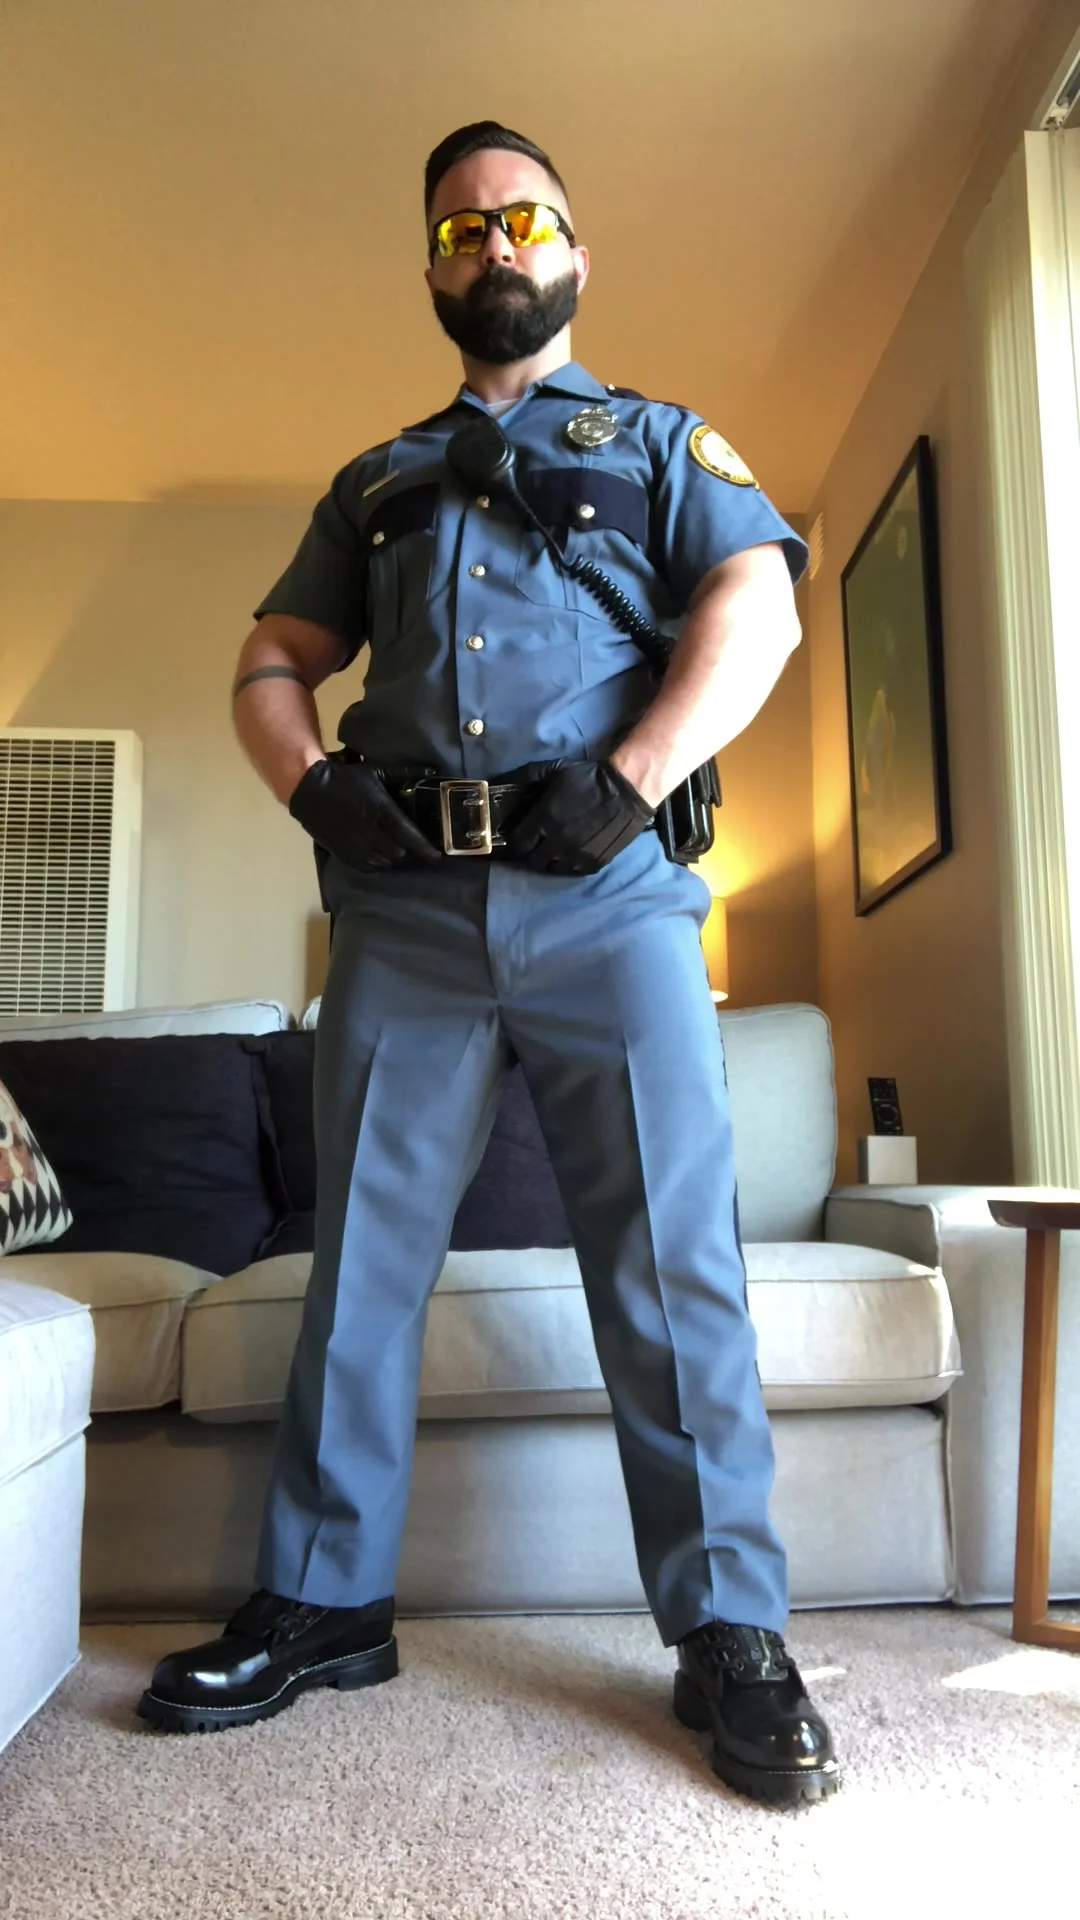 Gay in uniform porn